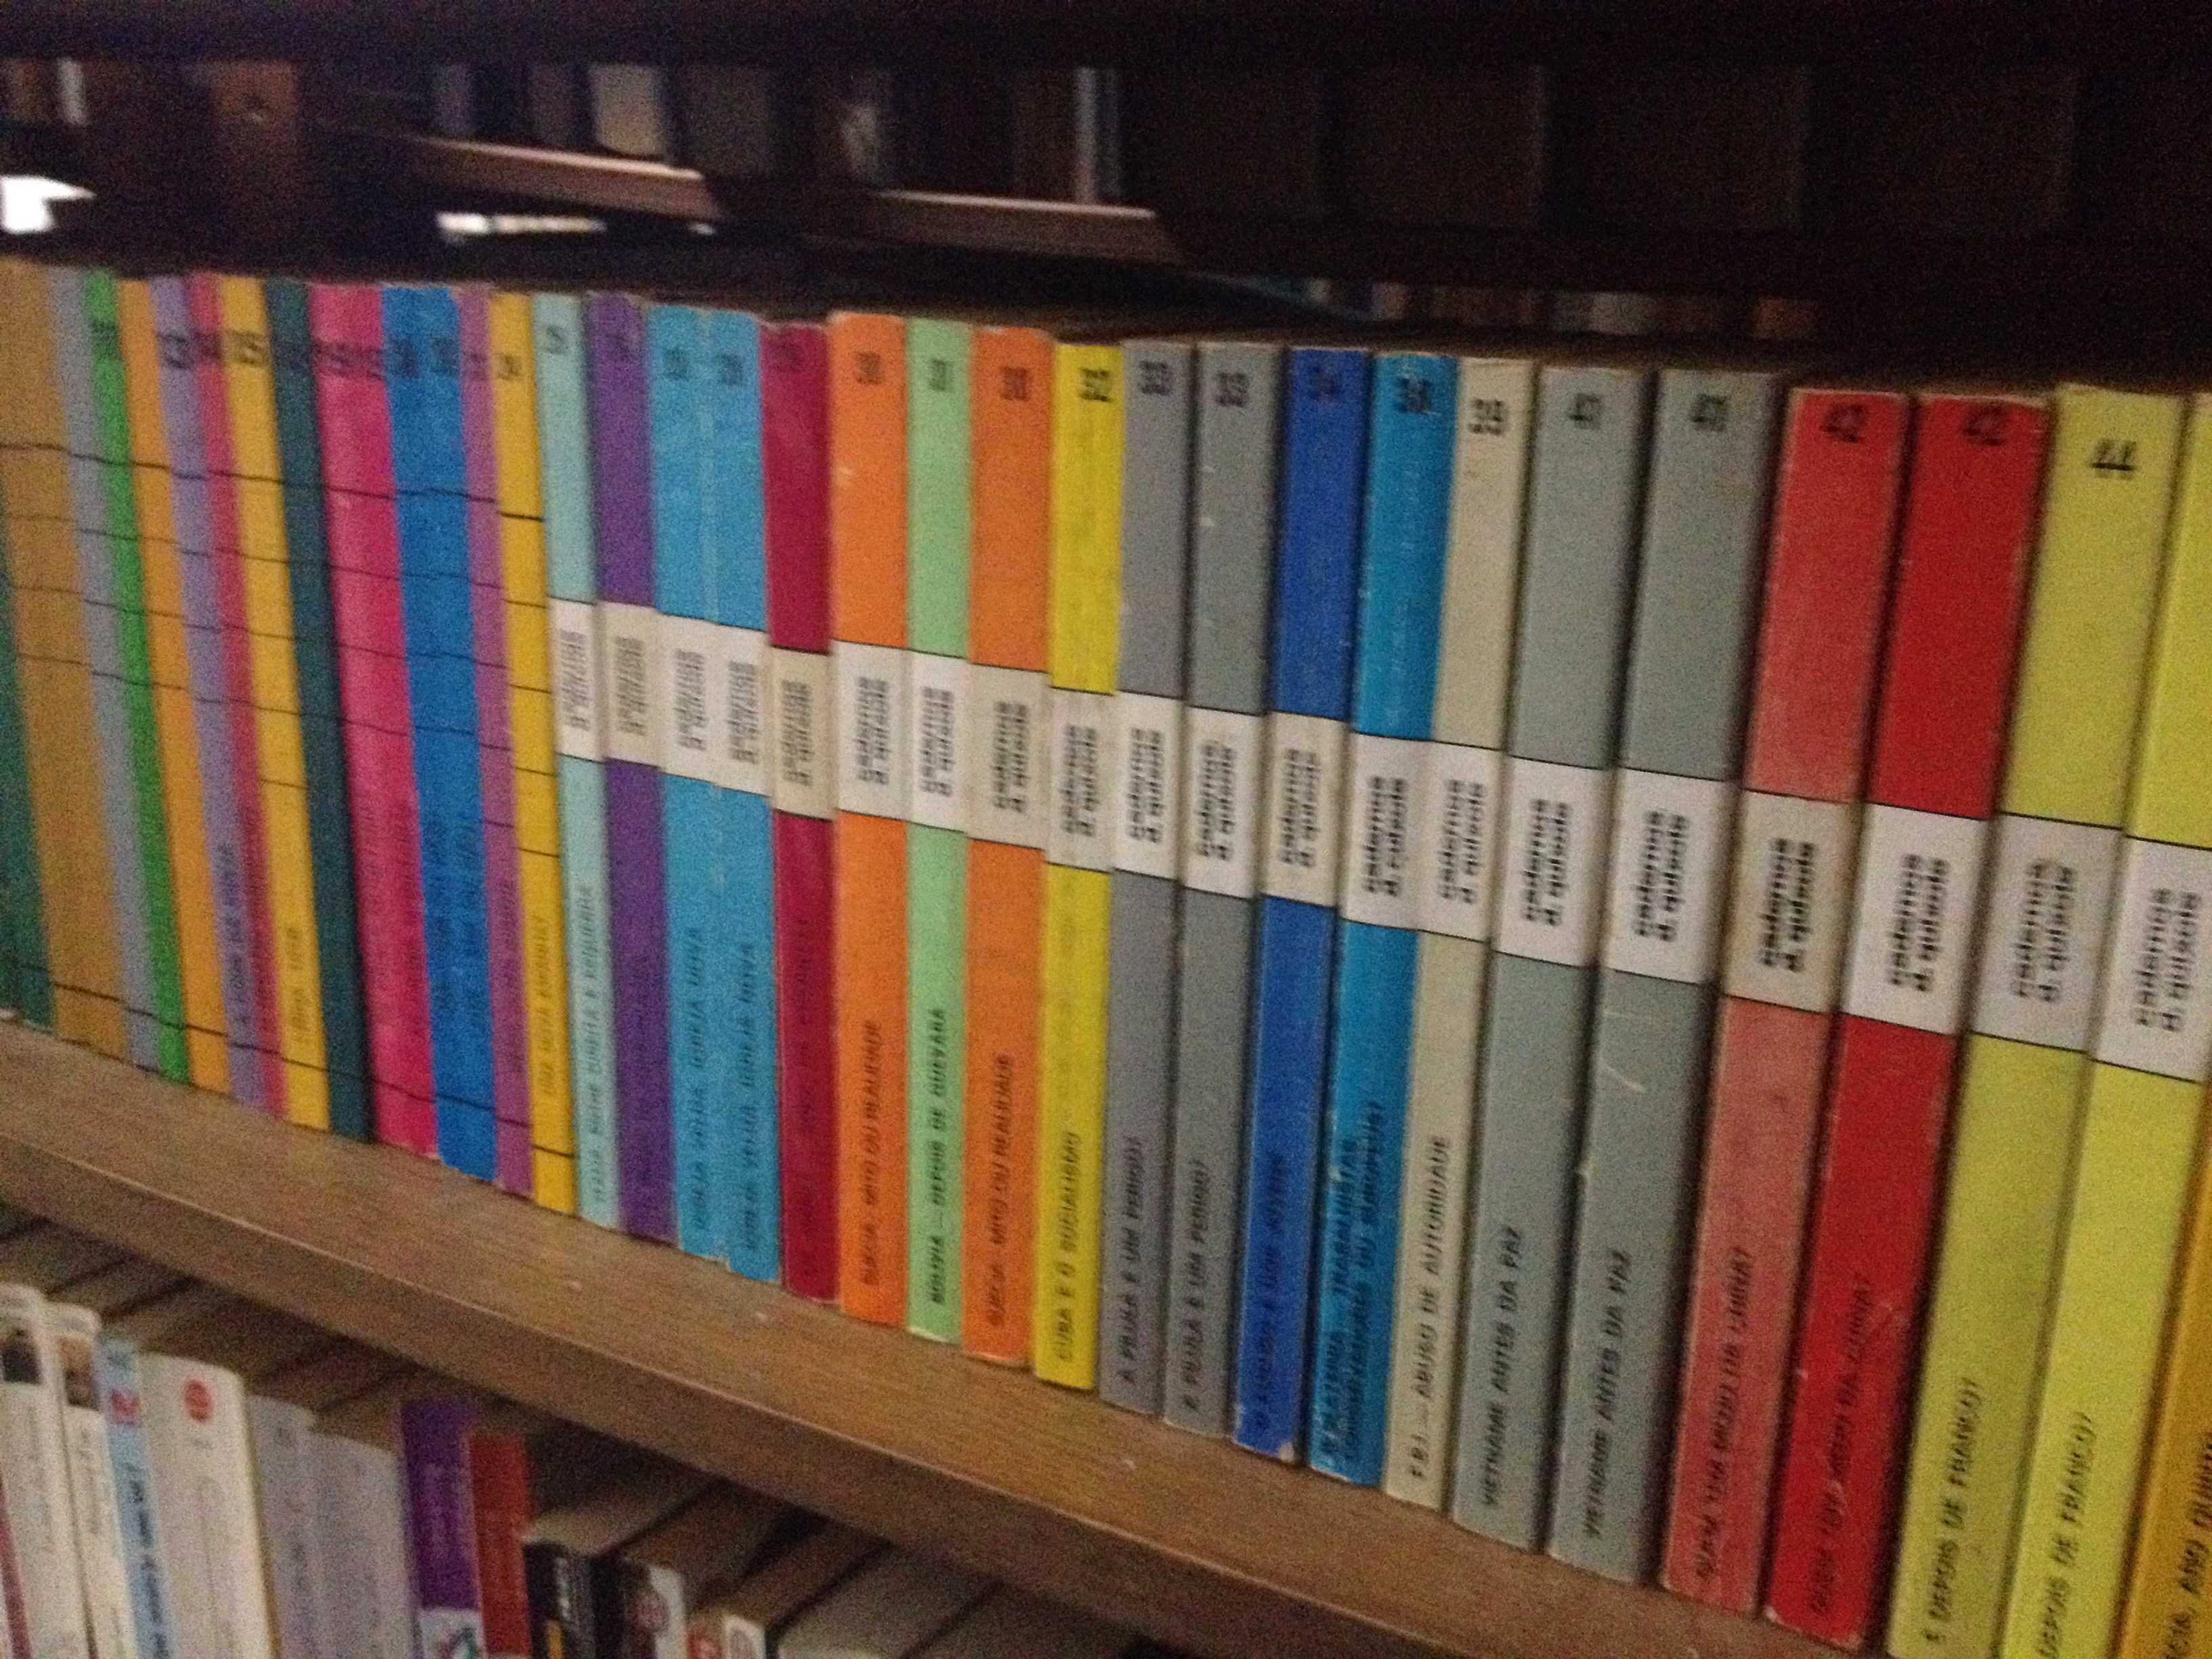 Colecção Cadernos D. Quixote (vários volumes)